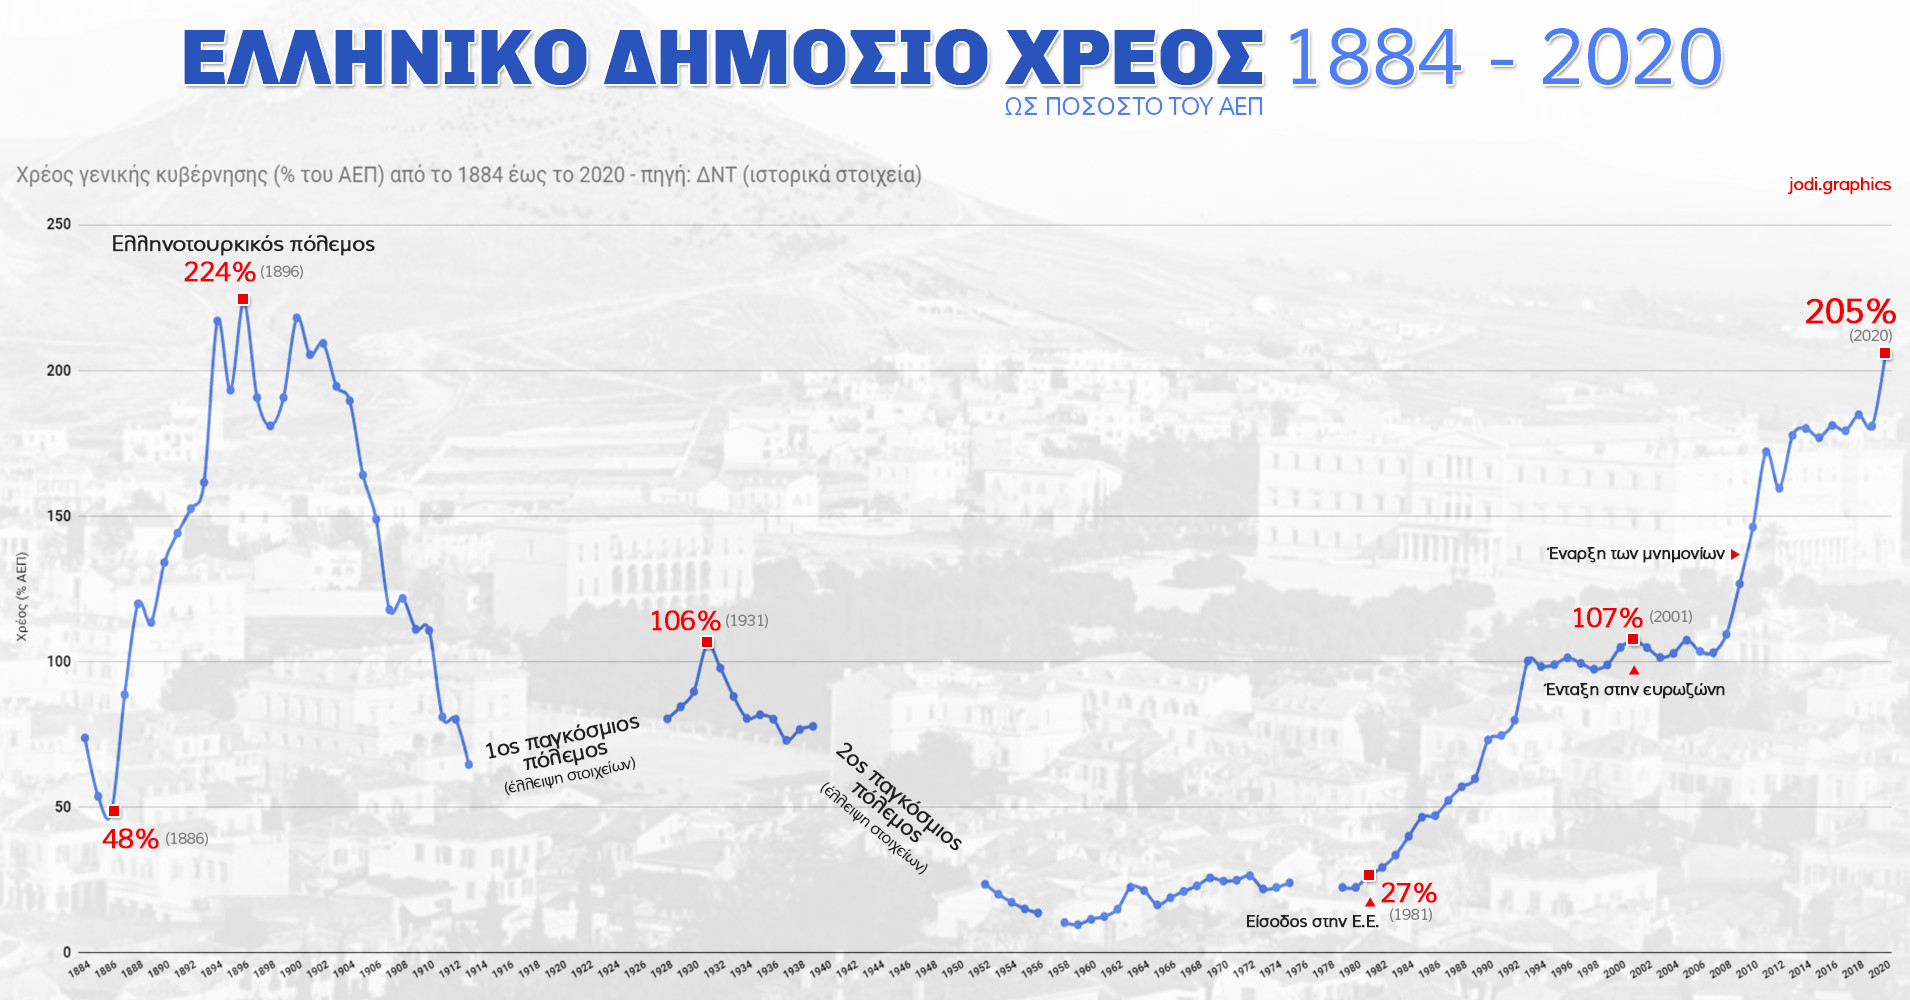 XREOS-1884-2020.jpg